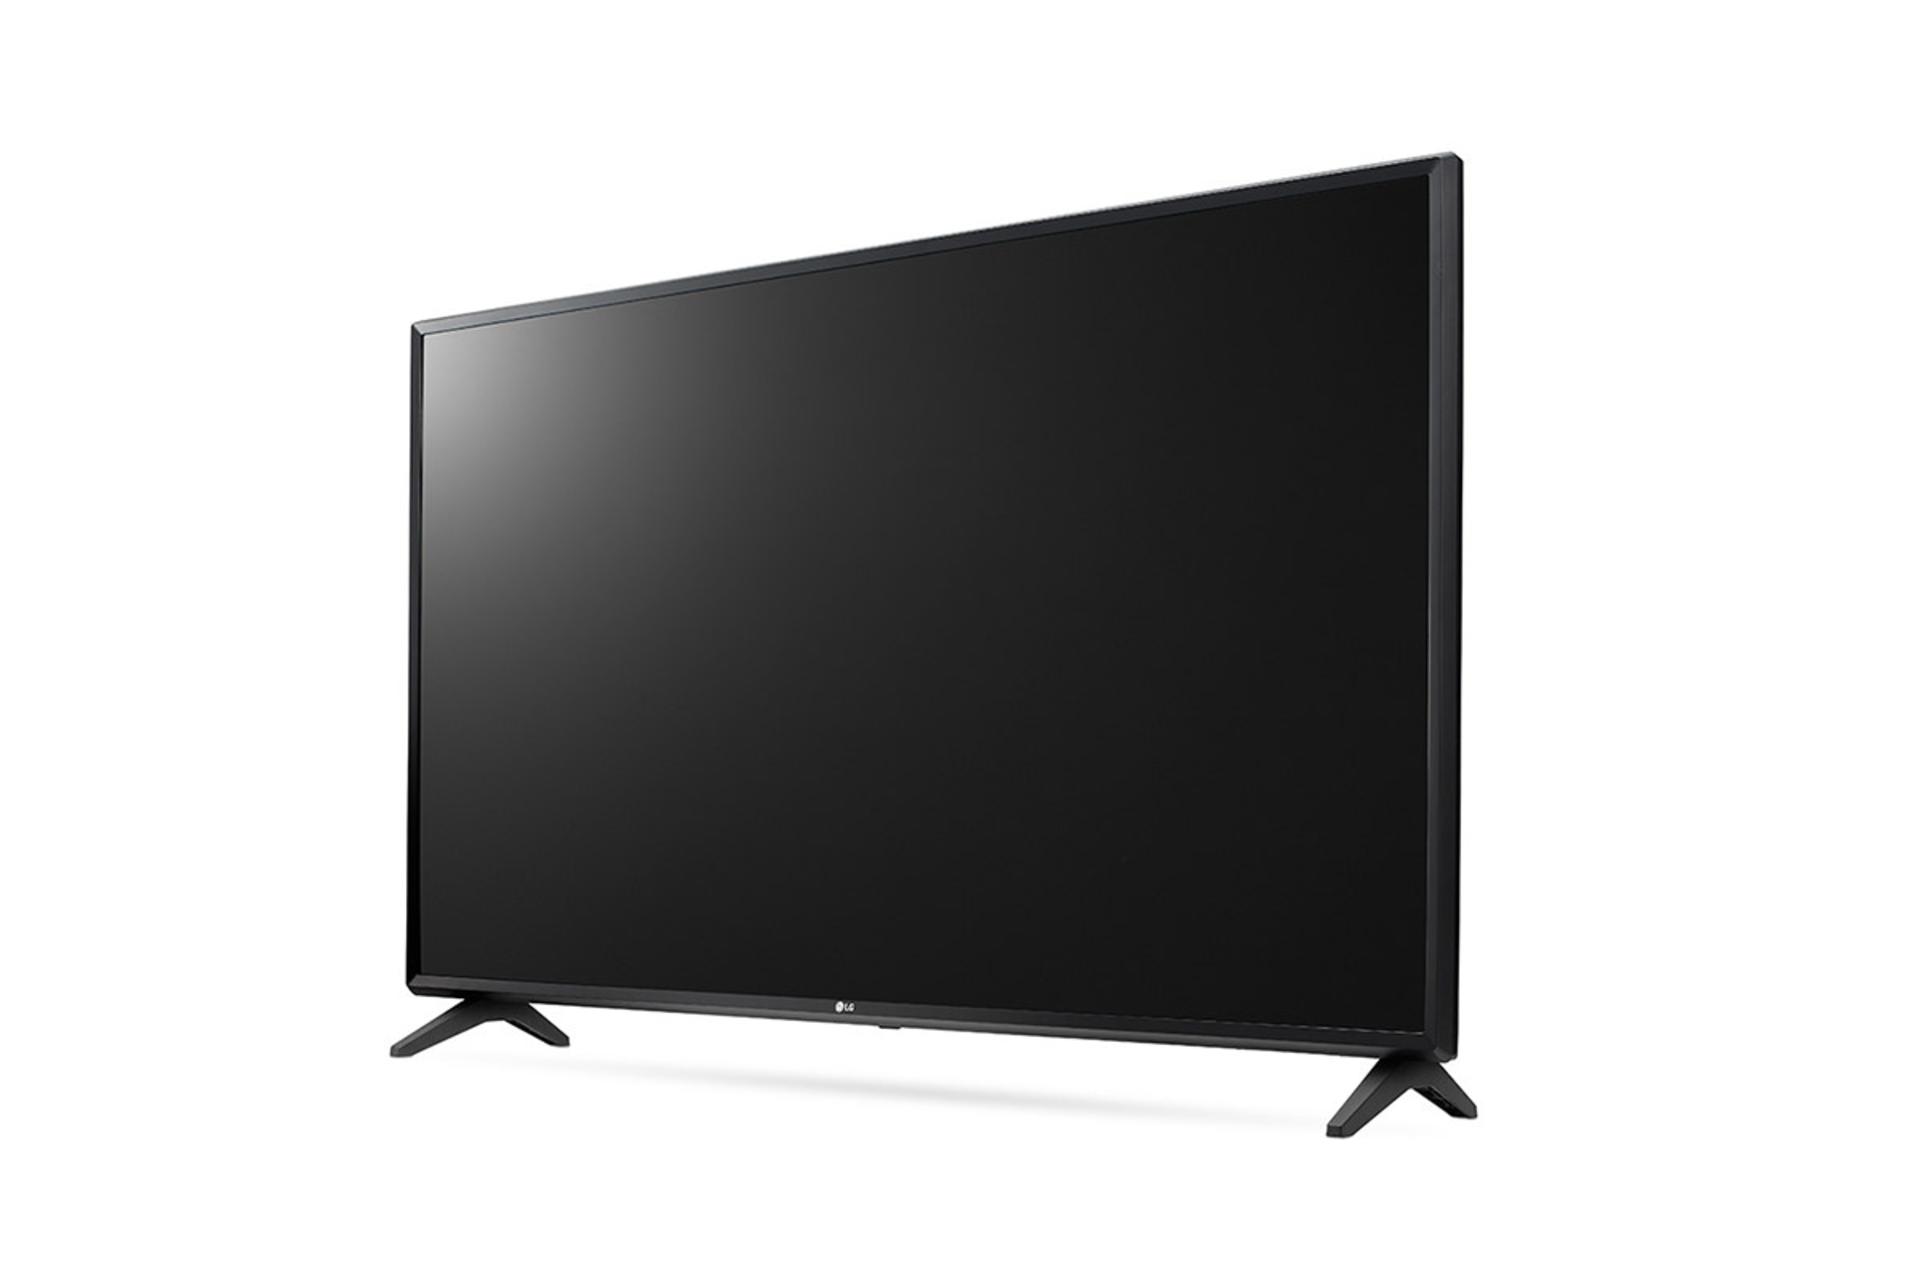 نمای نیم رخ تلویزیون ال جی LJ5500 مدل 43 اینچ با رنگ مشکی و صفحه خاموش